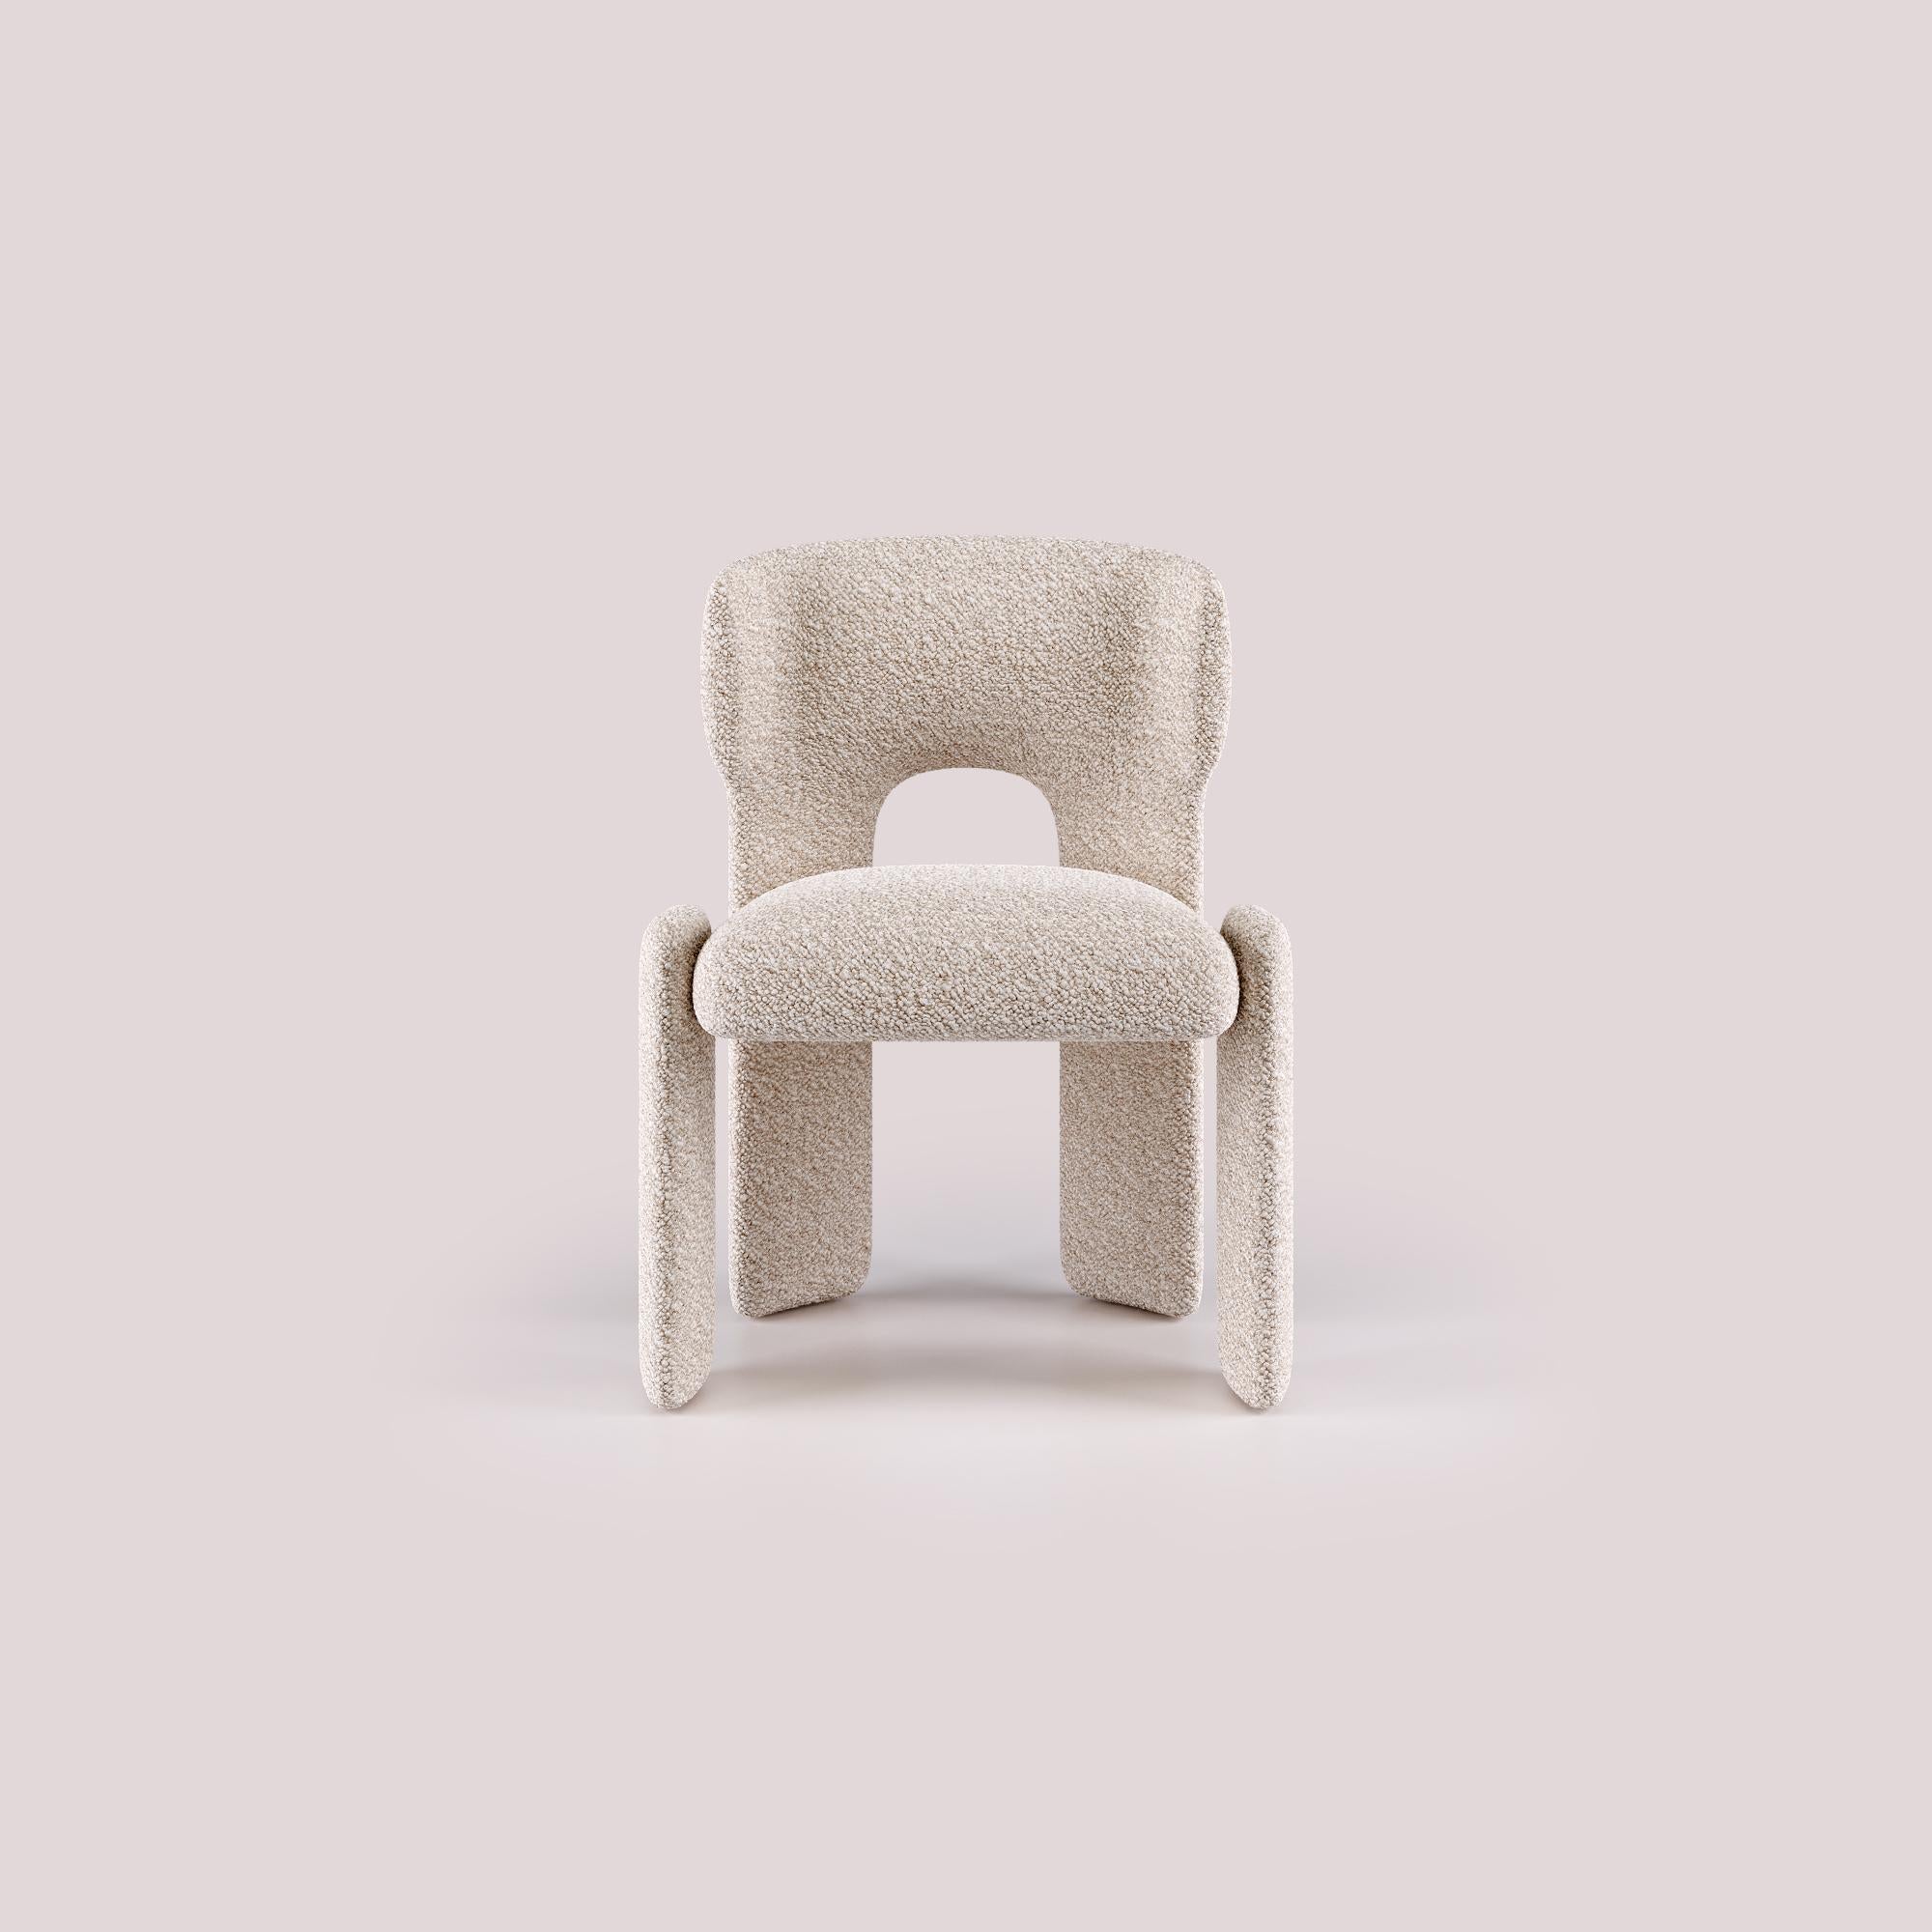 Témoignant d'un nouveau niveau de design moderne, la chaise de salle à manger Bold allie harmonieusement forme et fonction, rehaussant toute expérience culinaire par son élégance raffinée.

Des décennies d'expertise en matière de conception